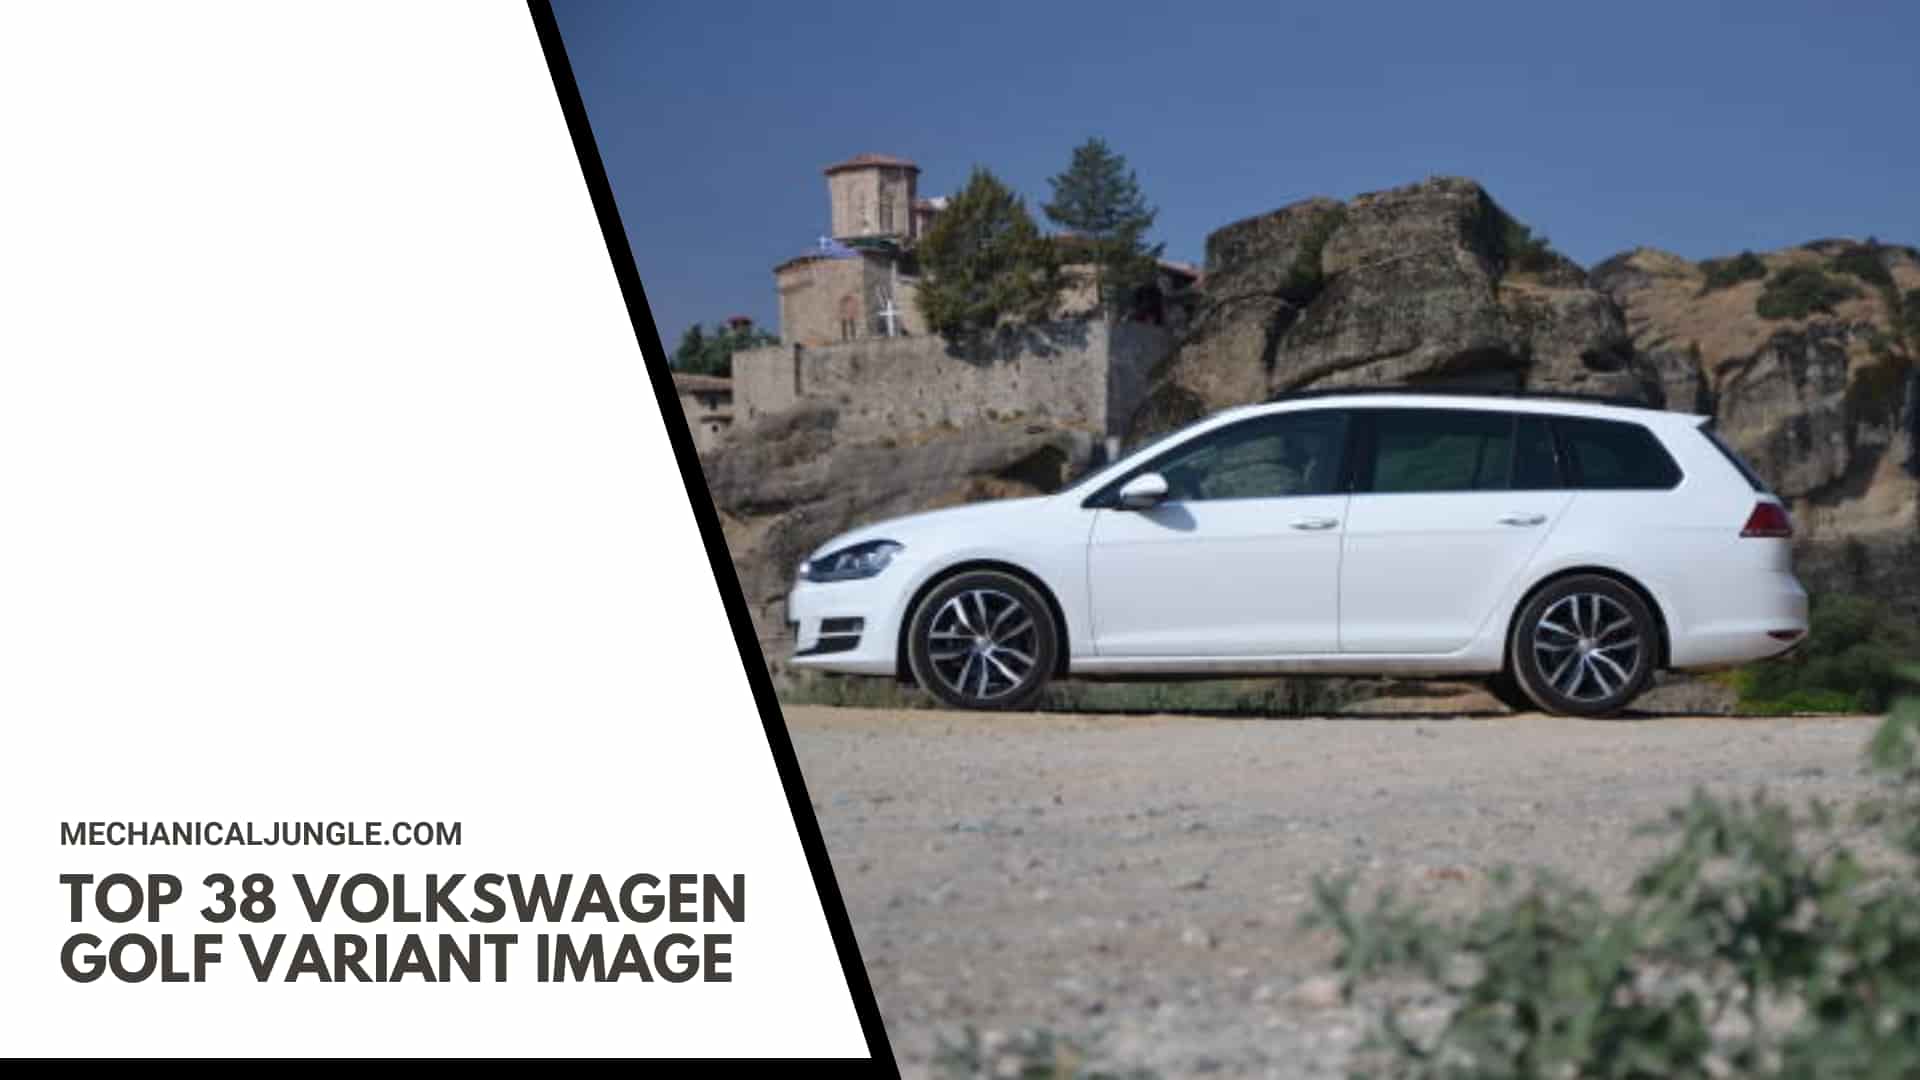 Top 38 Volkswagen Golf Variant Image